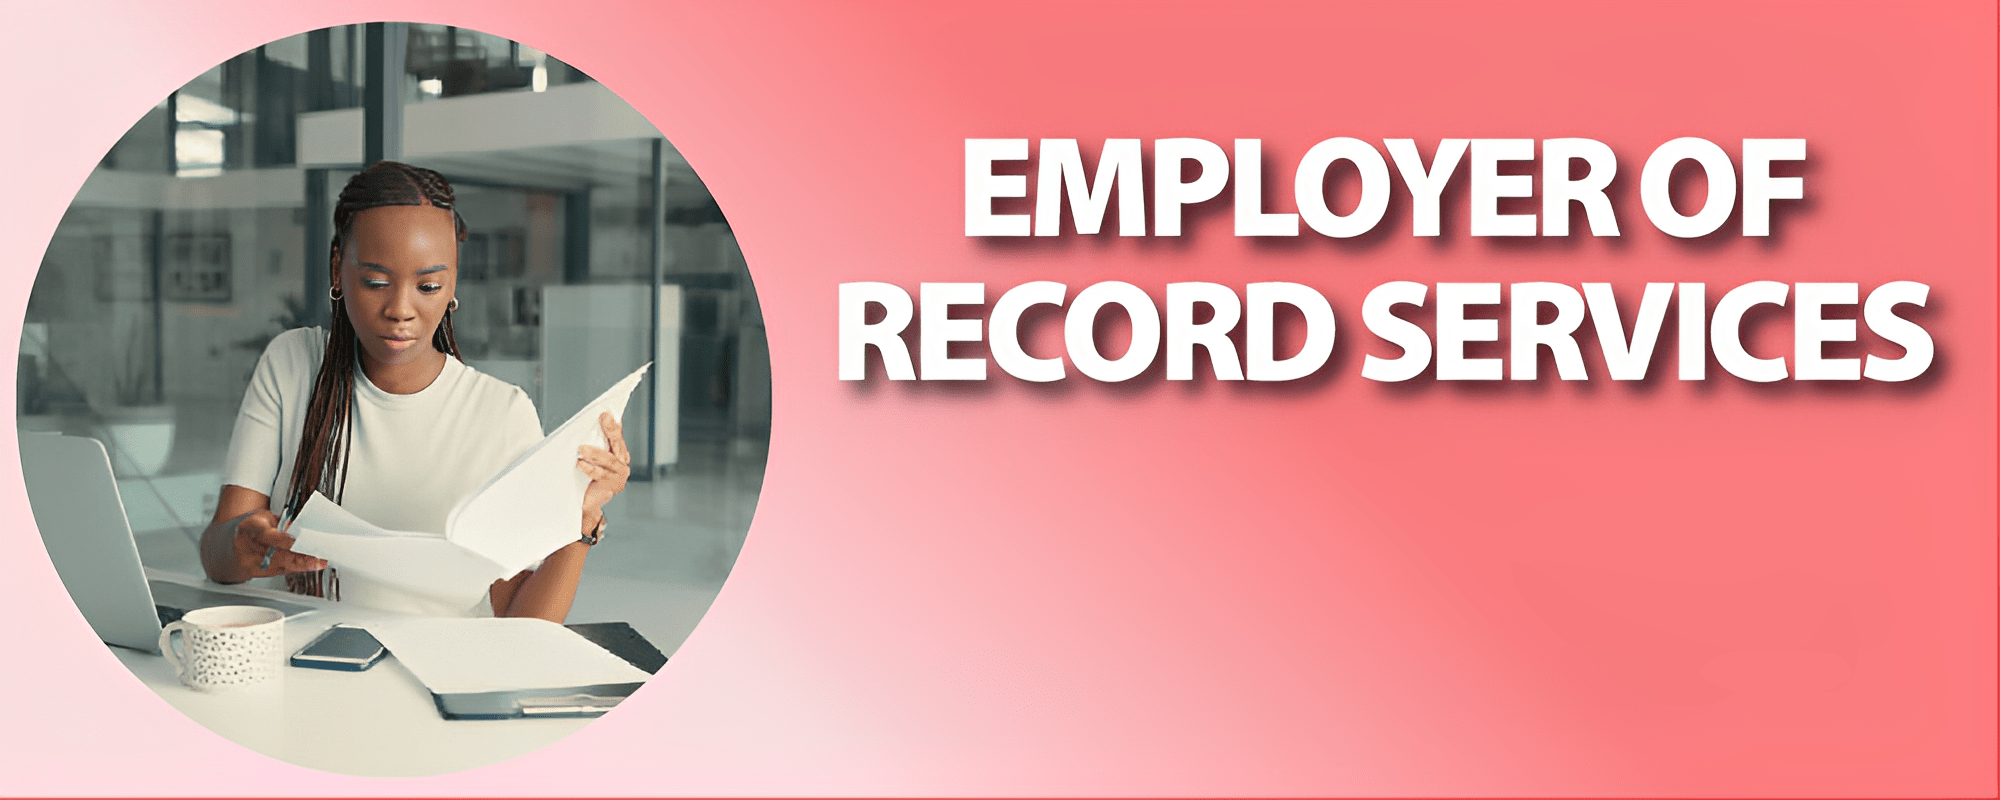 employer of record Uganda - Uganda employer of record